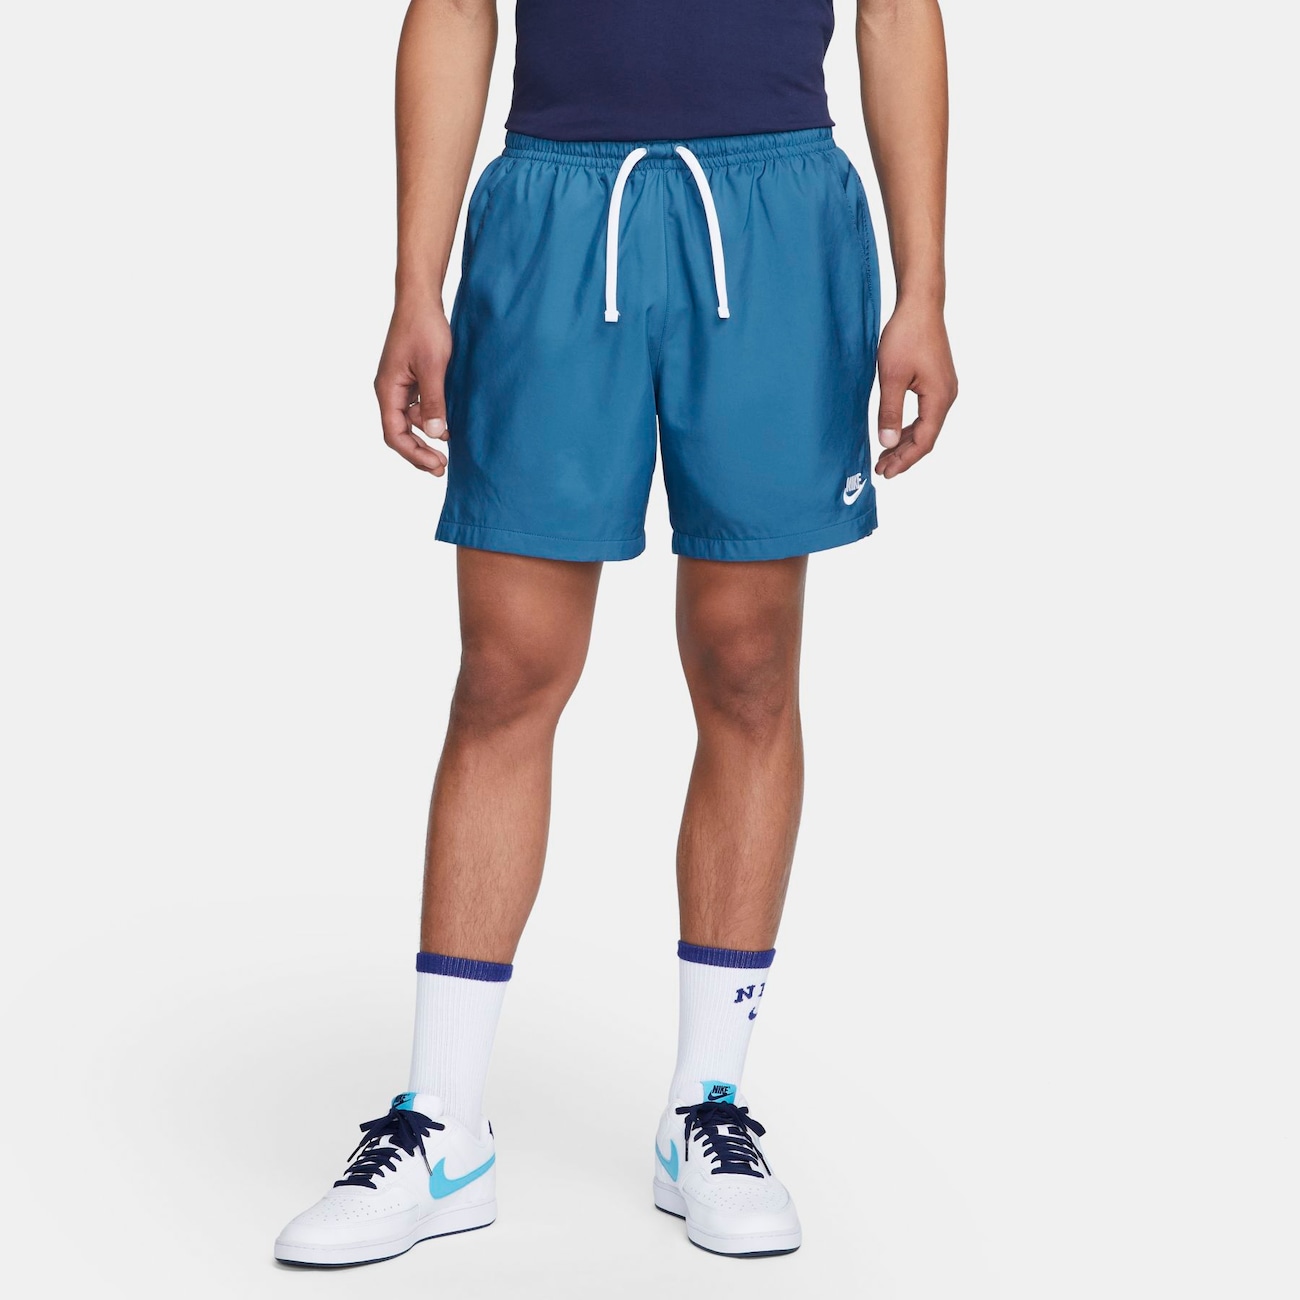 Shorts Nike Sportswear Woven Flow Masculino